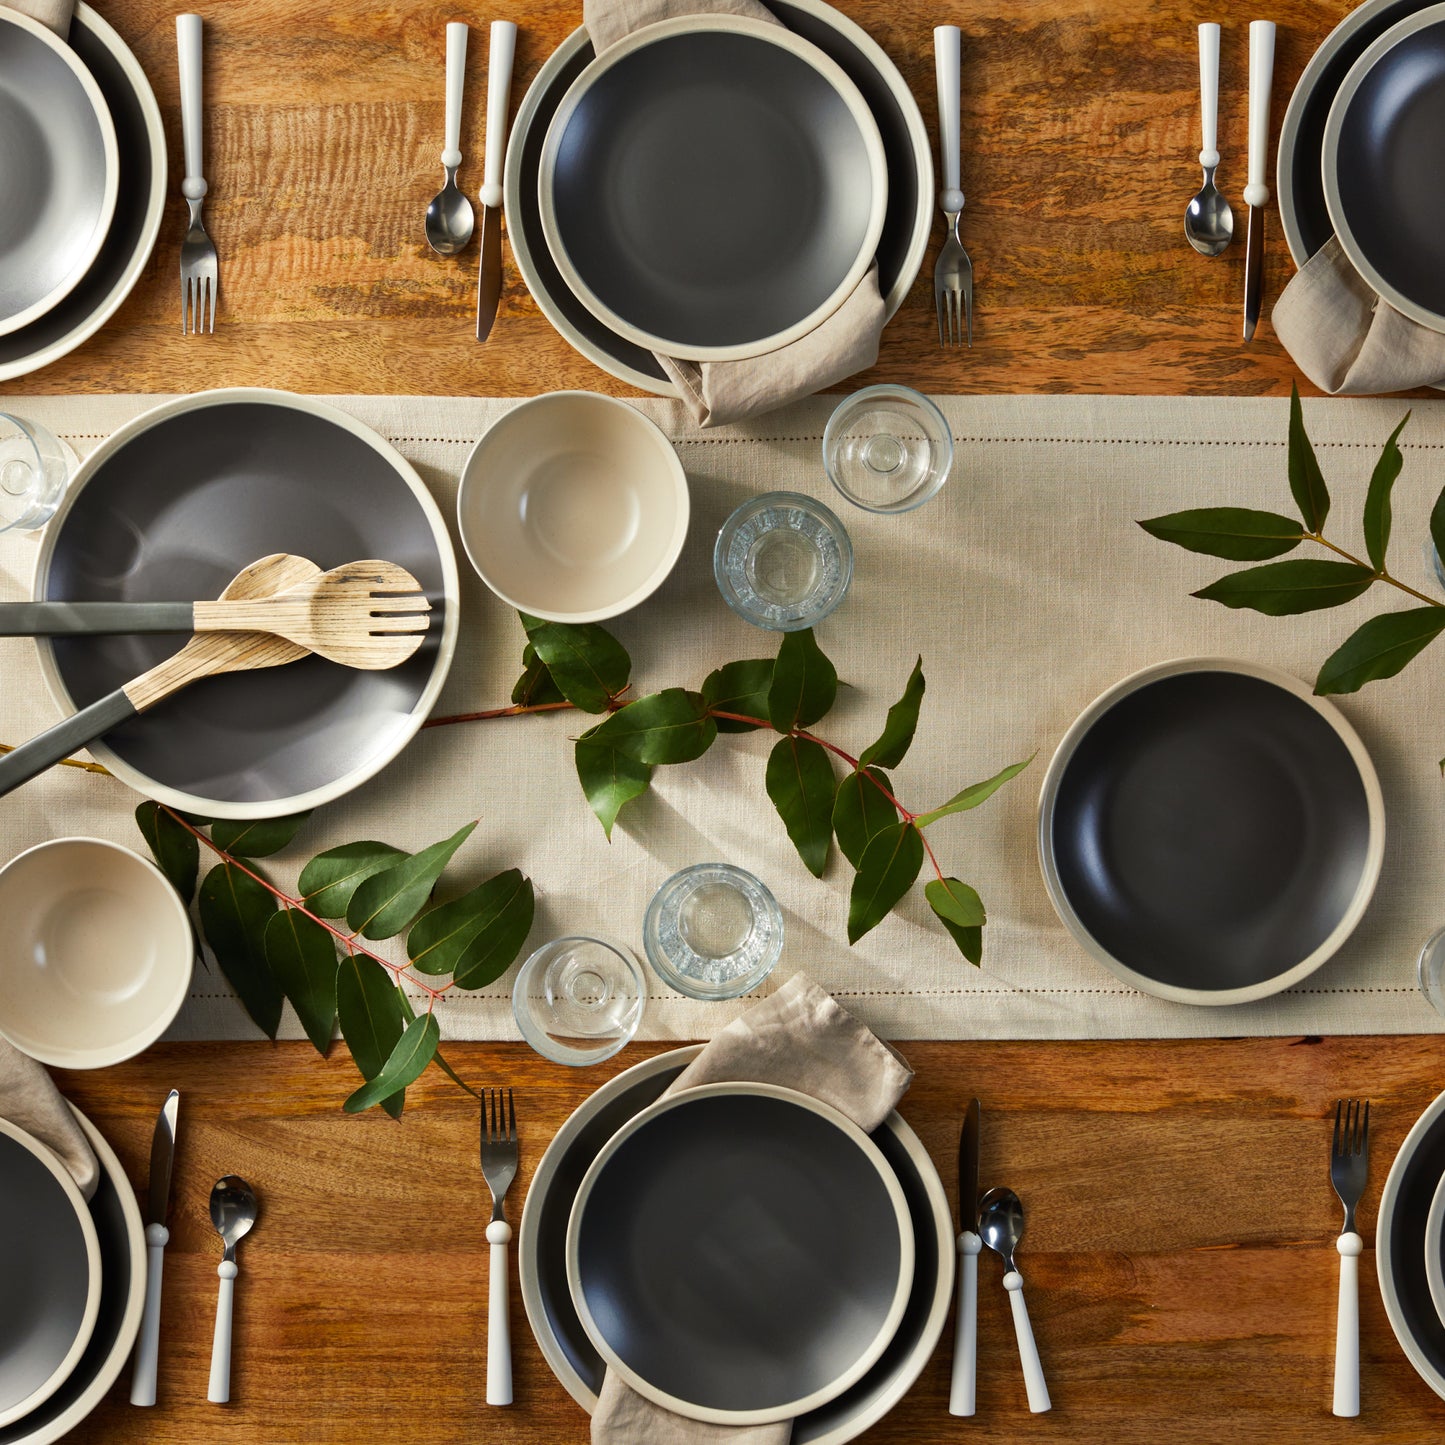 Serenity Stoneware Dinnerware Set - Dark Gray And Cream